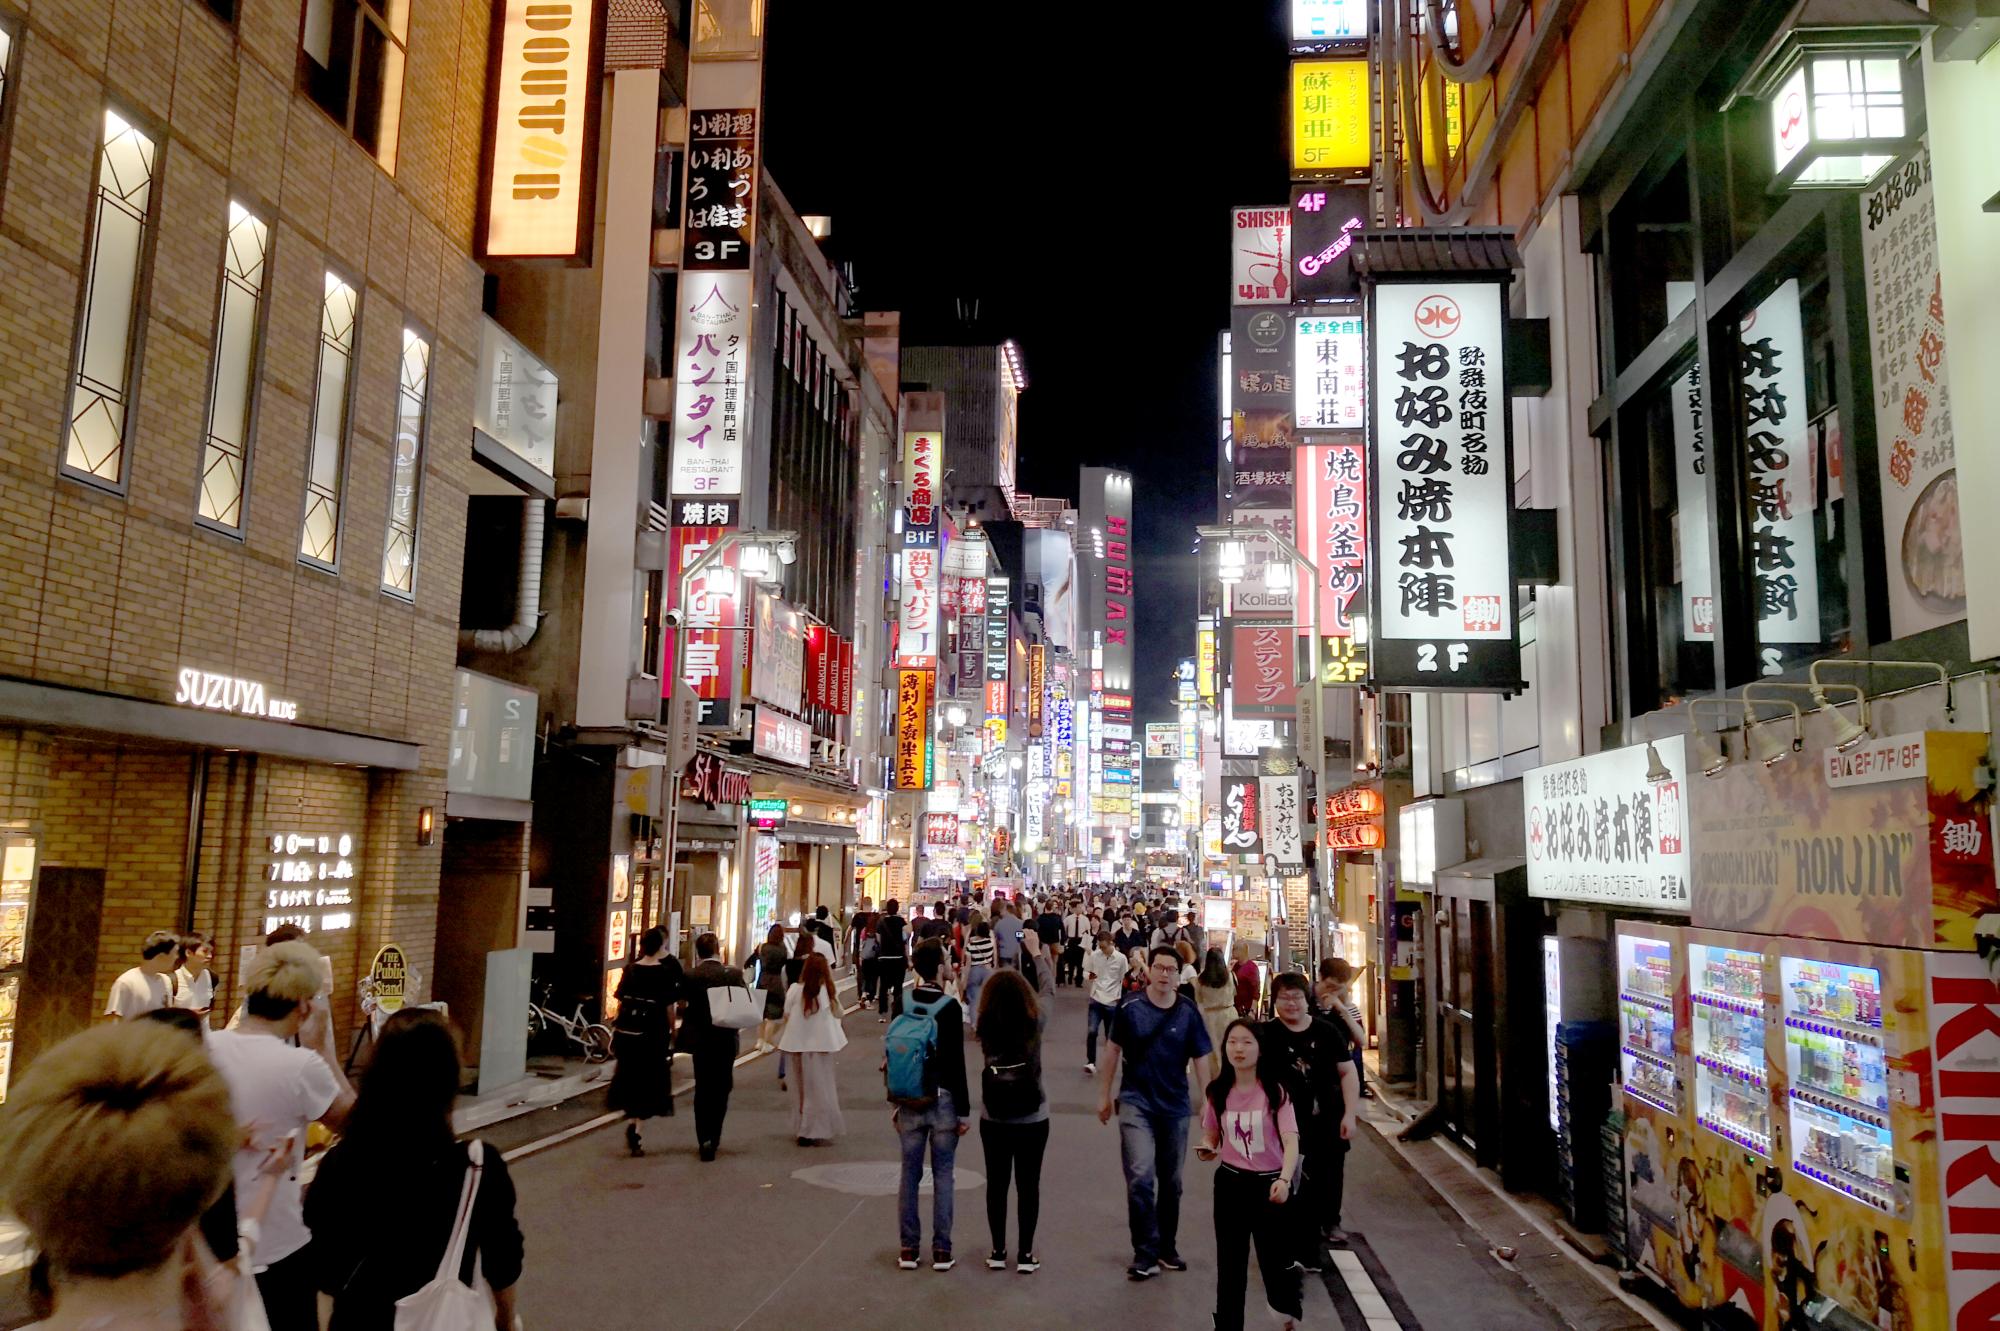 Tokyo (2019) - Shinjuku Lights